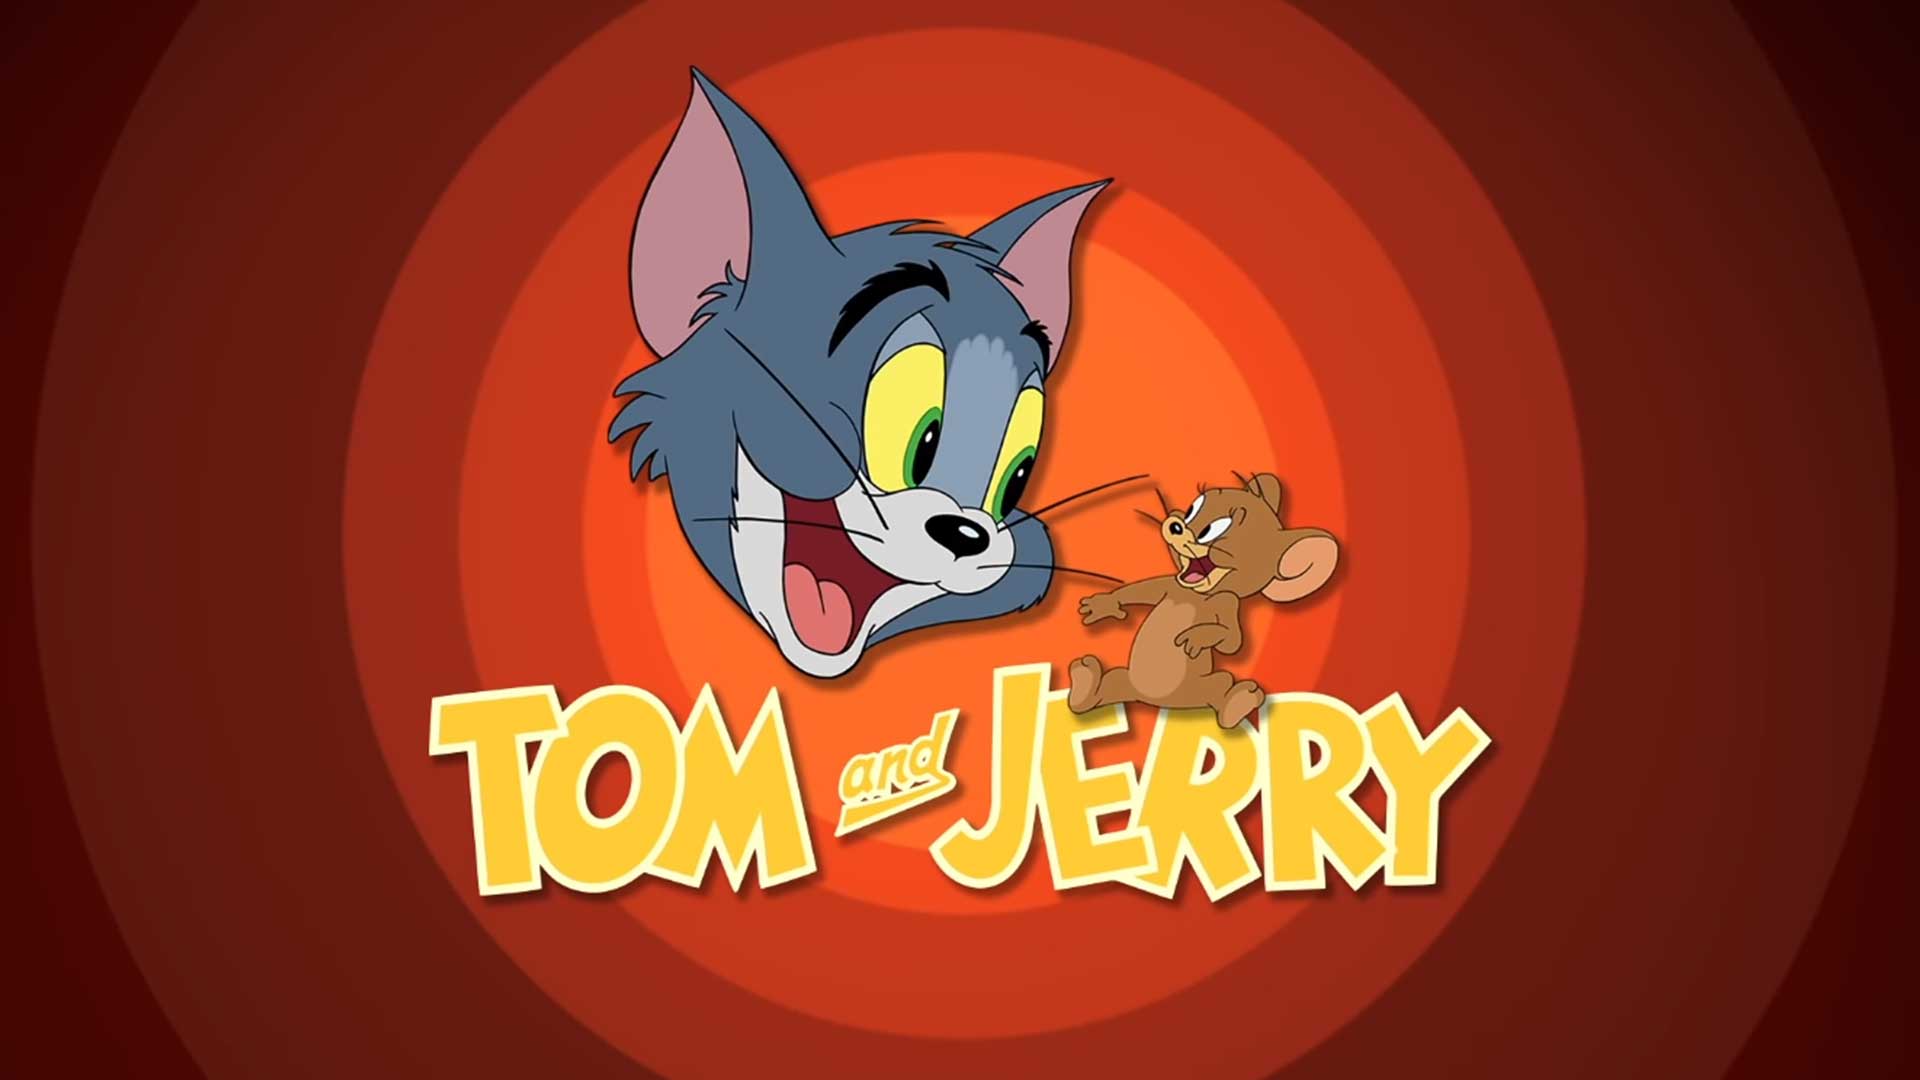 Том и Джерри – 24 серия «Молочный путь» / Tom and Jerry